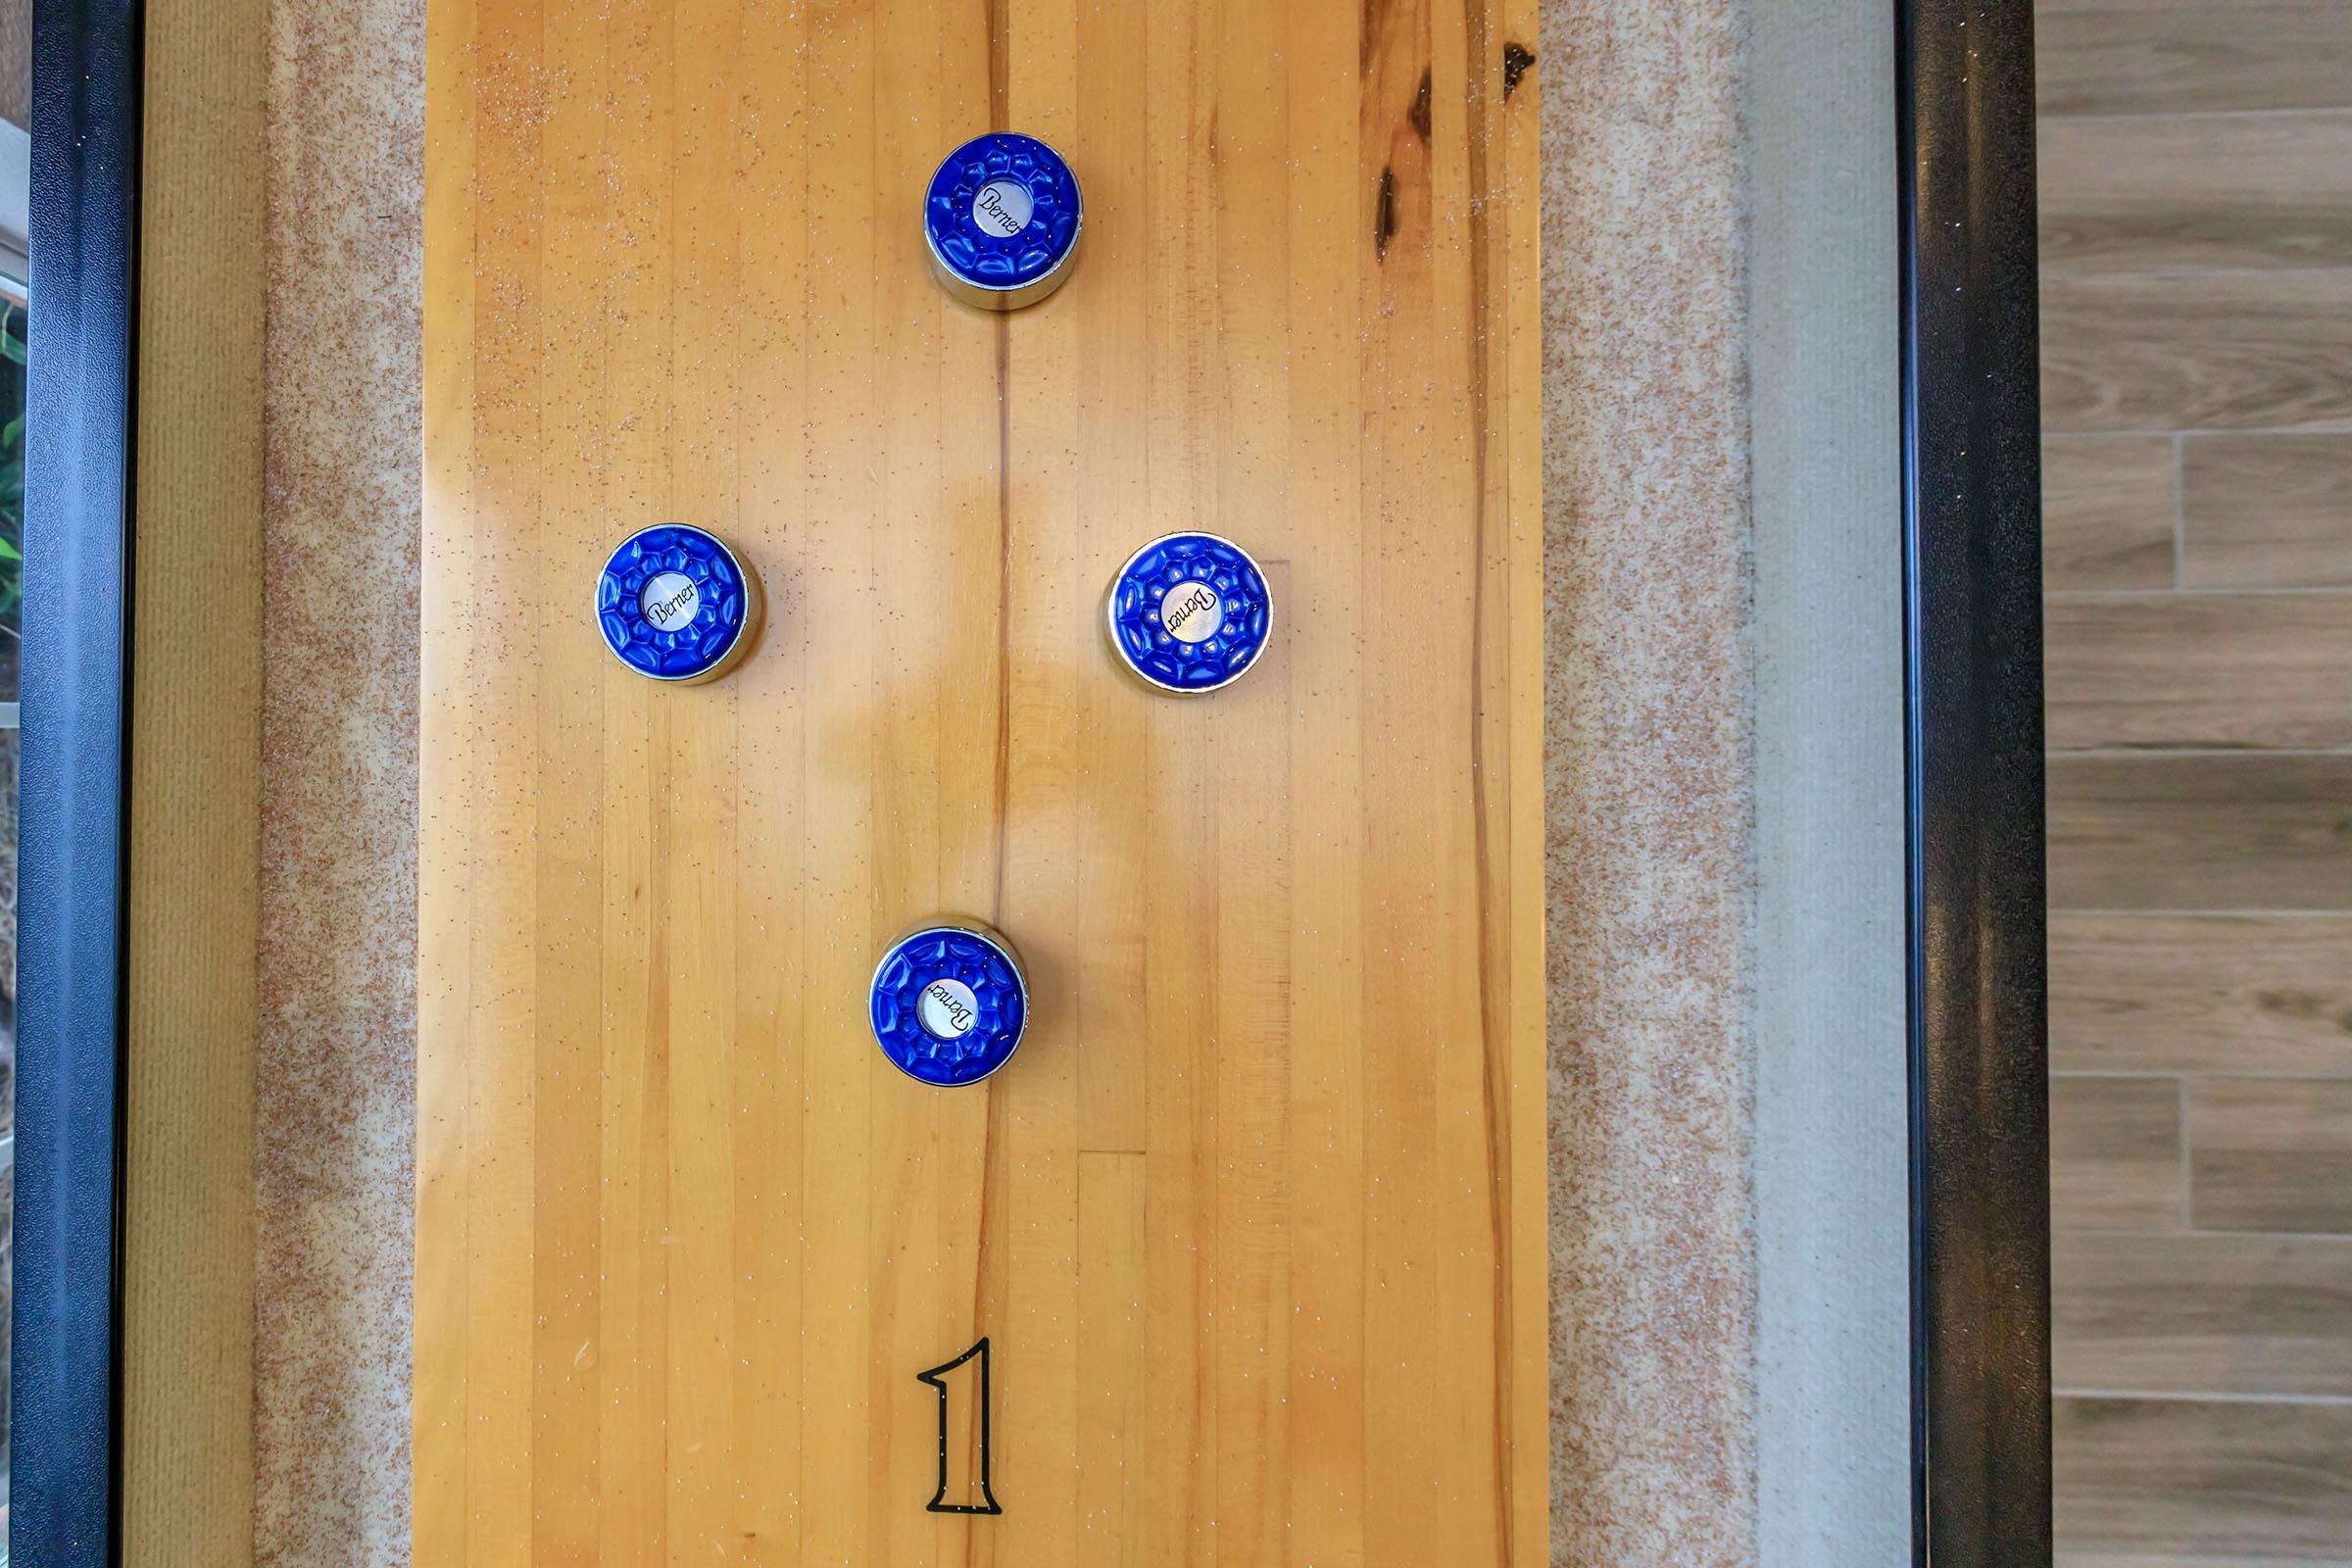 a clock on top of a wooden door